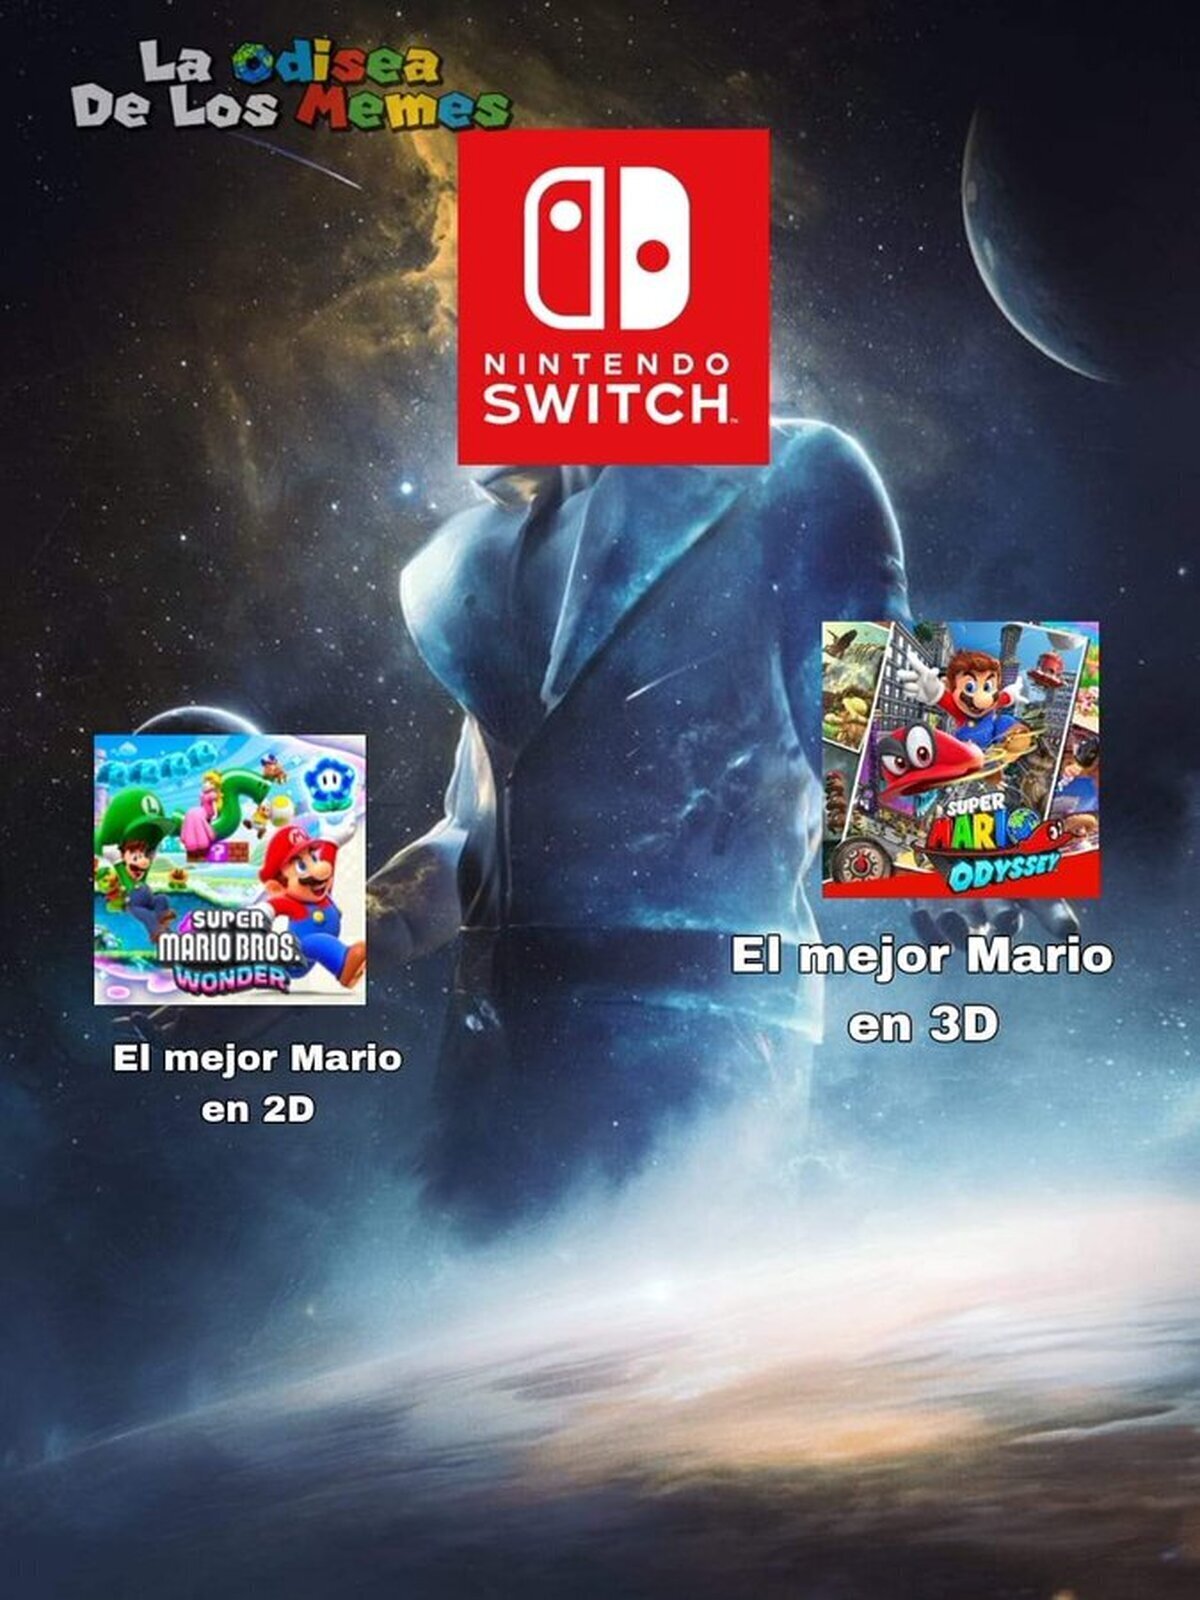 Tremendo lo de Nintendo